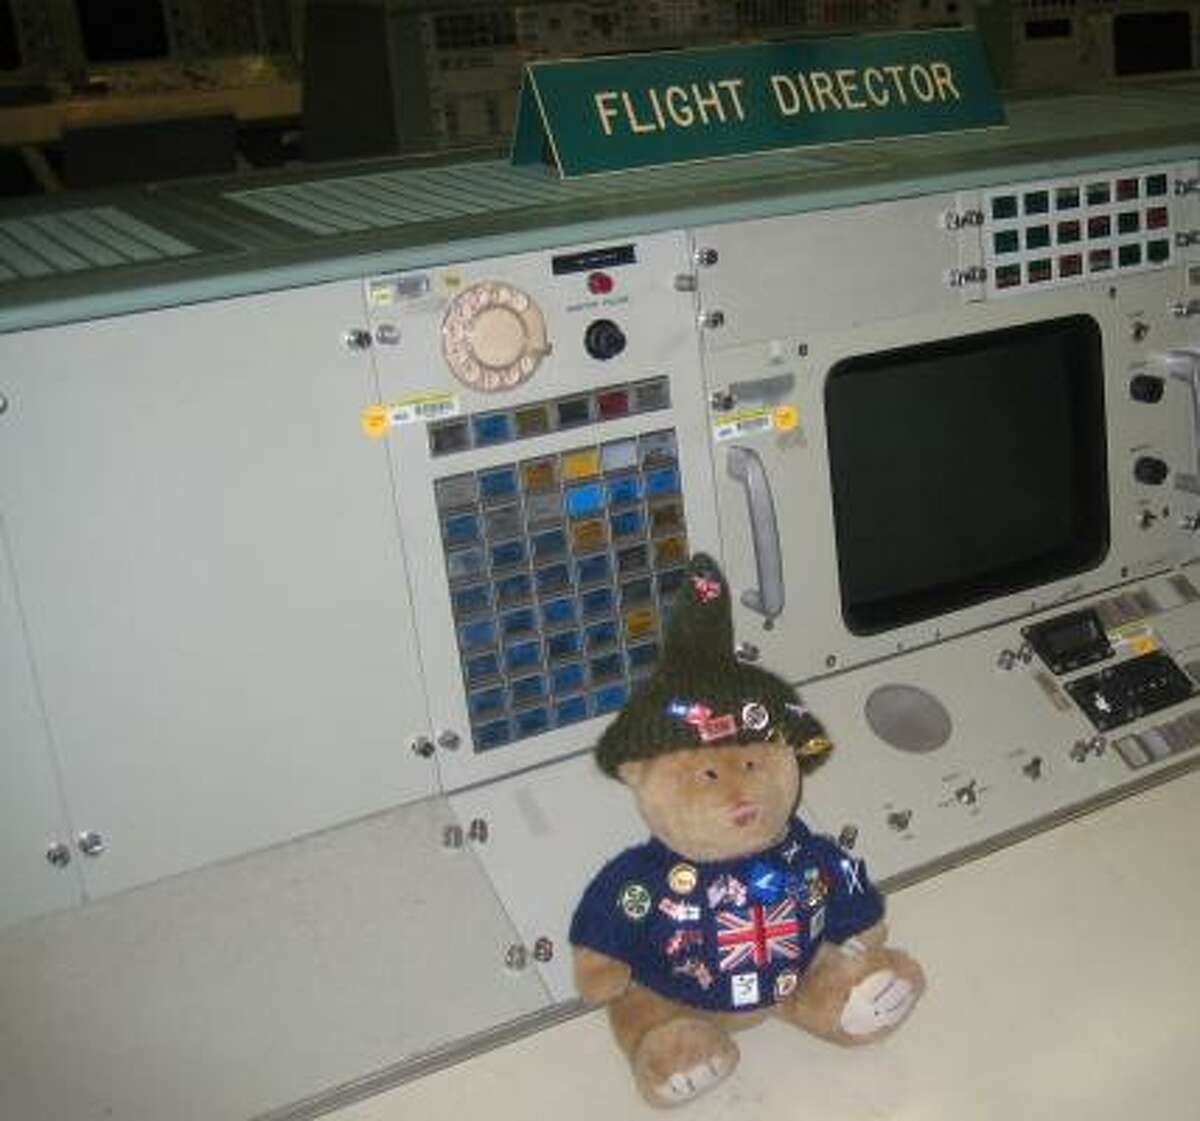 Ted Bear visits Mission Control at NASA.